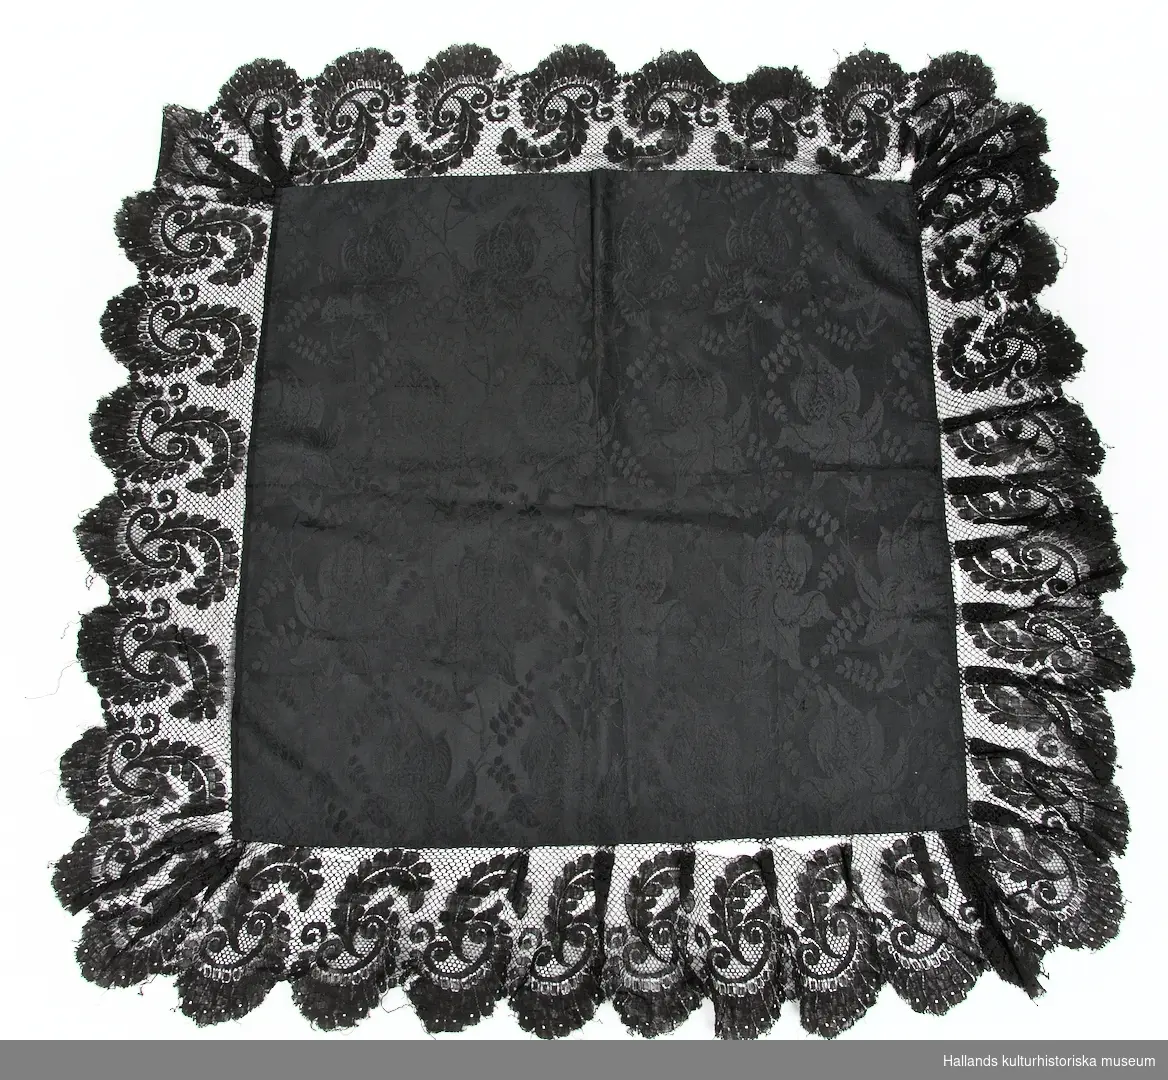 Sjal i svart sidentyg med invävda storblommiga mönster, dekorerad med en cirka 15 cm bred spetskant i ett gemoetrisk blommönster.